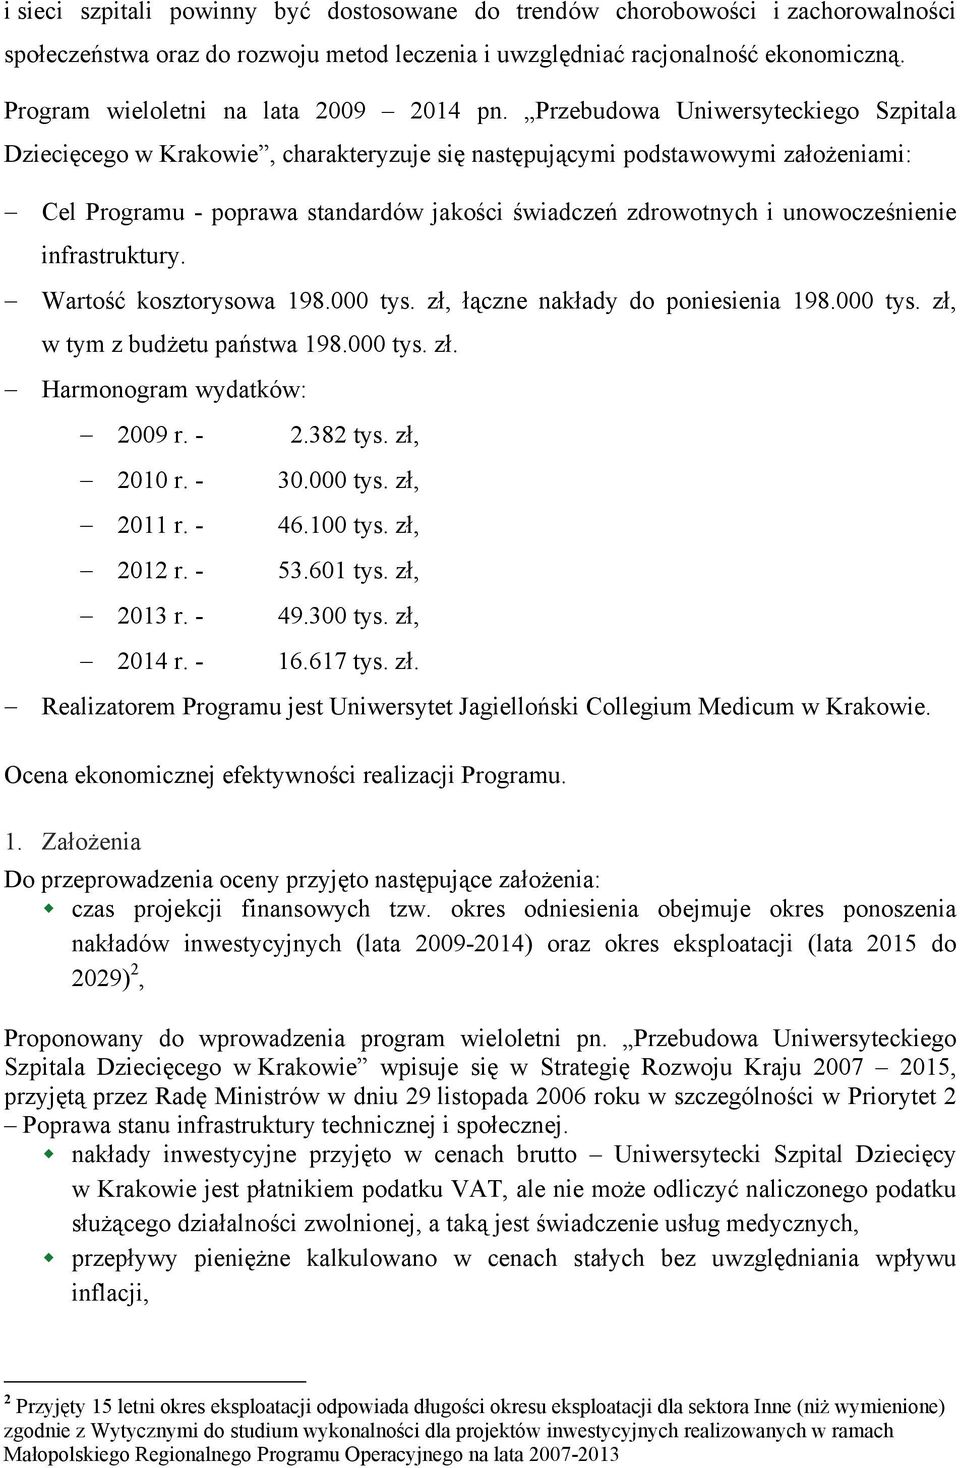 Przebudowa Uniwersyteckiego Szpitala Dziecięcego w Krakowie, charakteryzuje się następującymi podstawowymi założeniami: Cel Programu - poprawa standardów jakości świadczeń zdrowotnych i